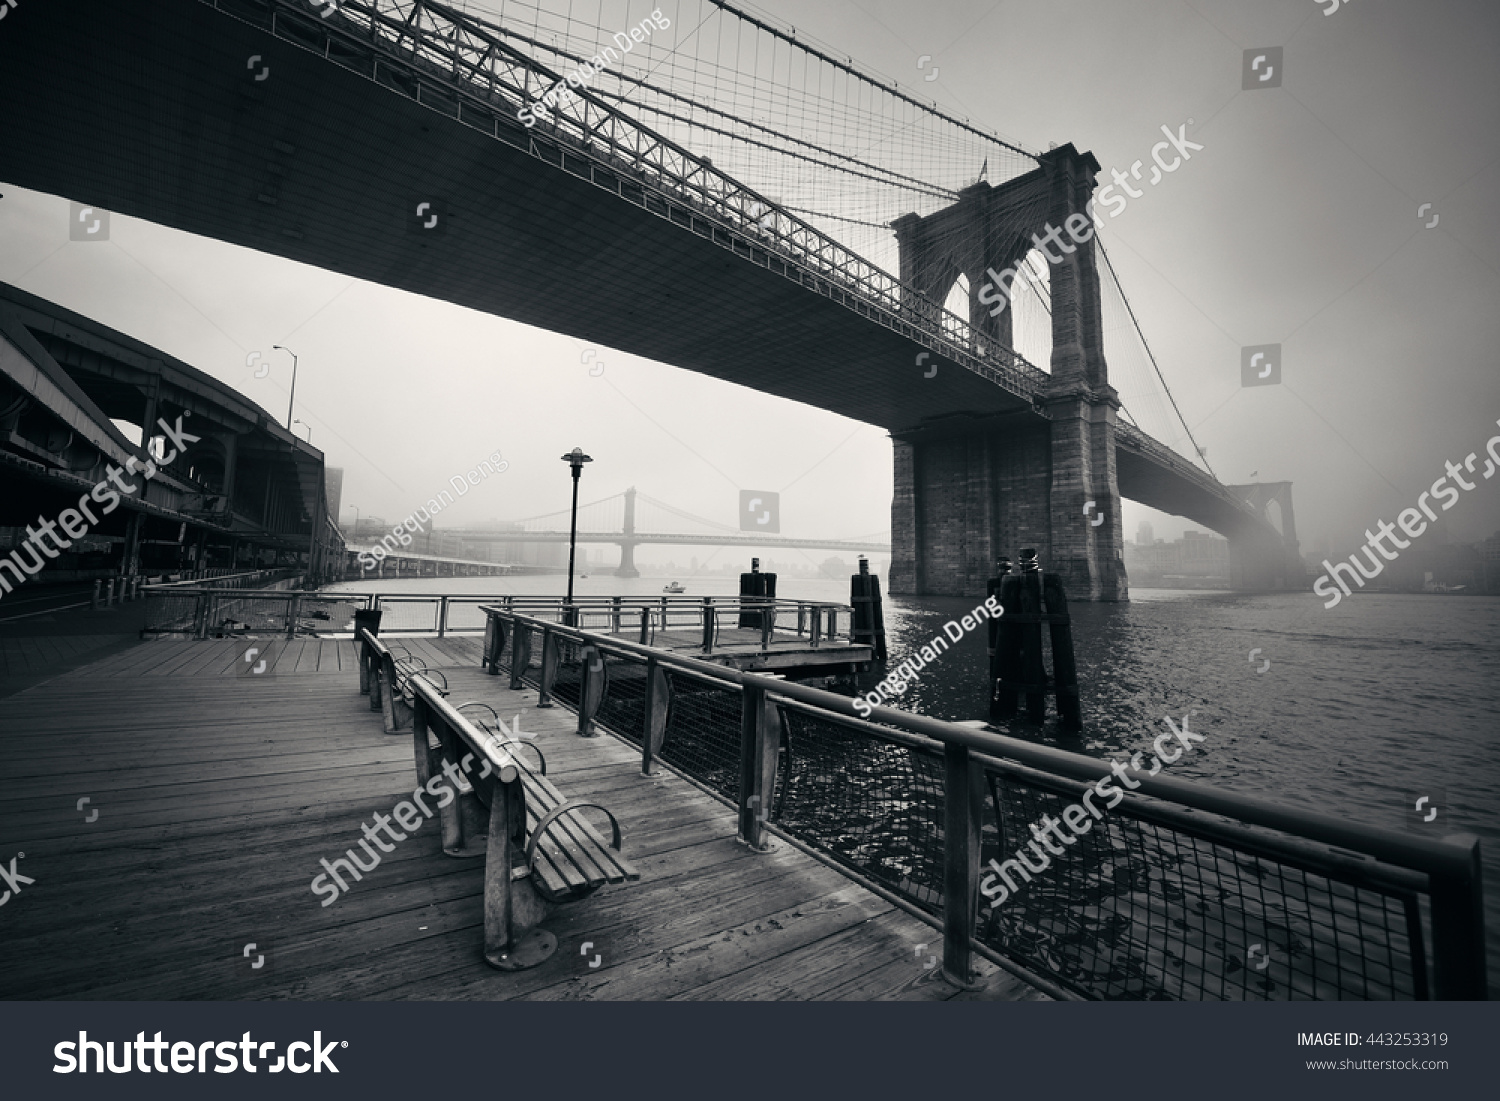 Brooklyn Bridge in a foggy day in downtown Manhattan #443253319